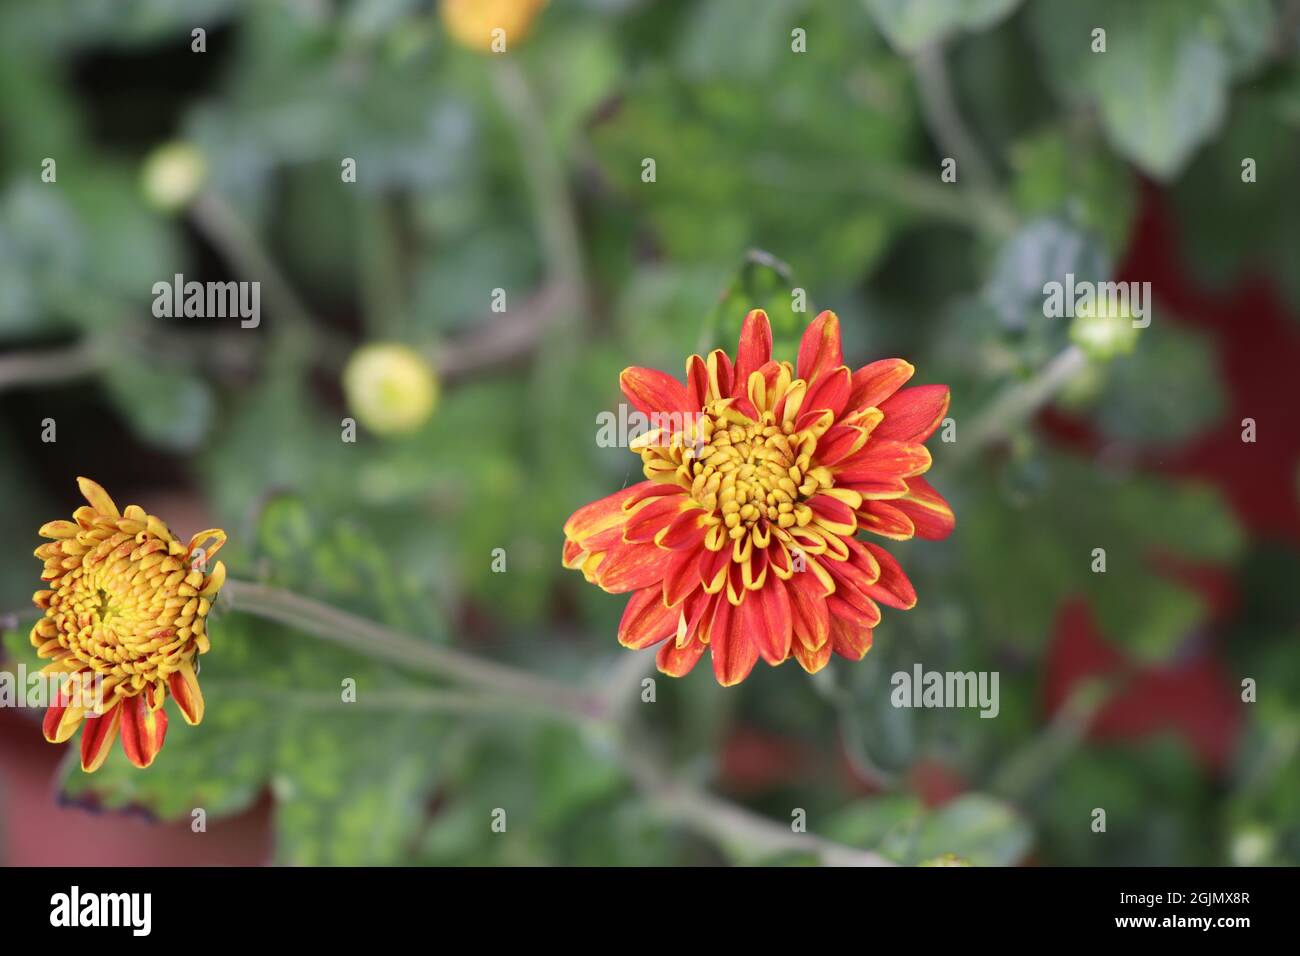 Chrysantheme blüht im blühenden Stadium, blühende rote und gelbe Chrysantheme Blume Stockfoto